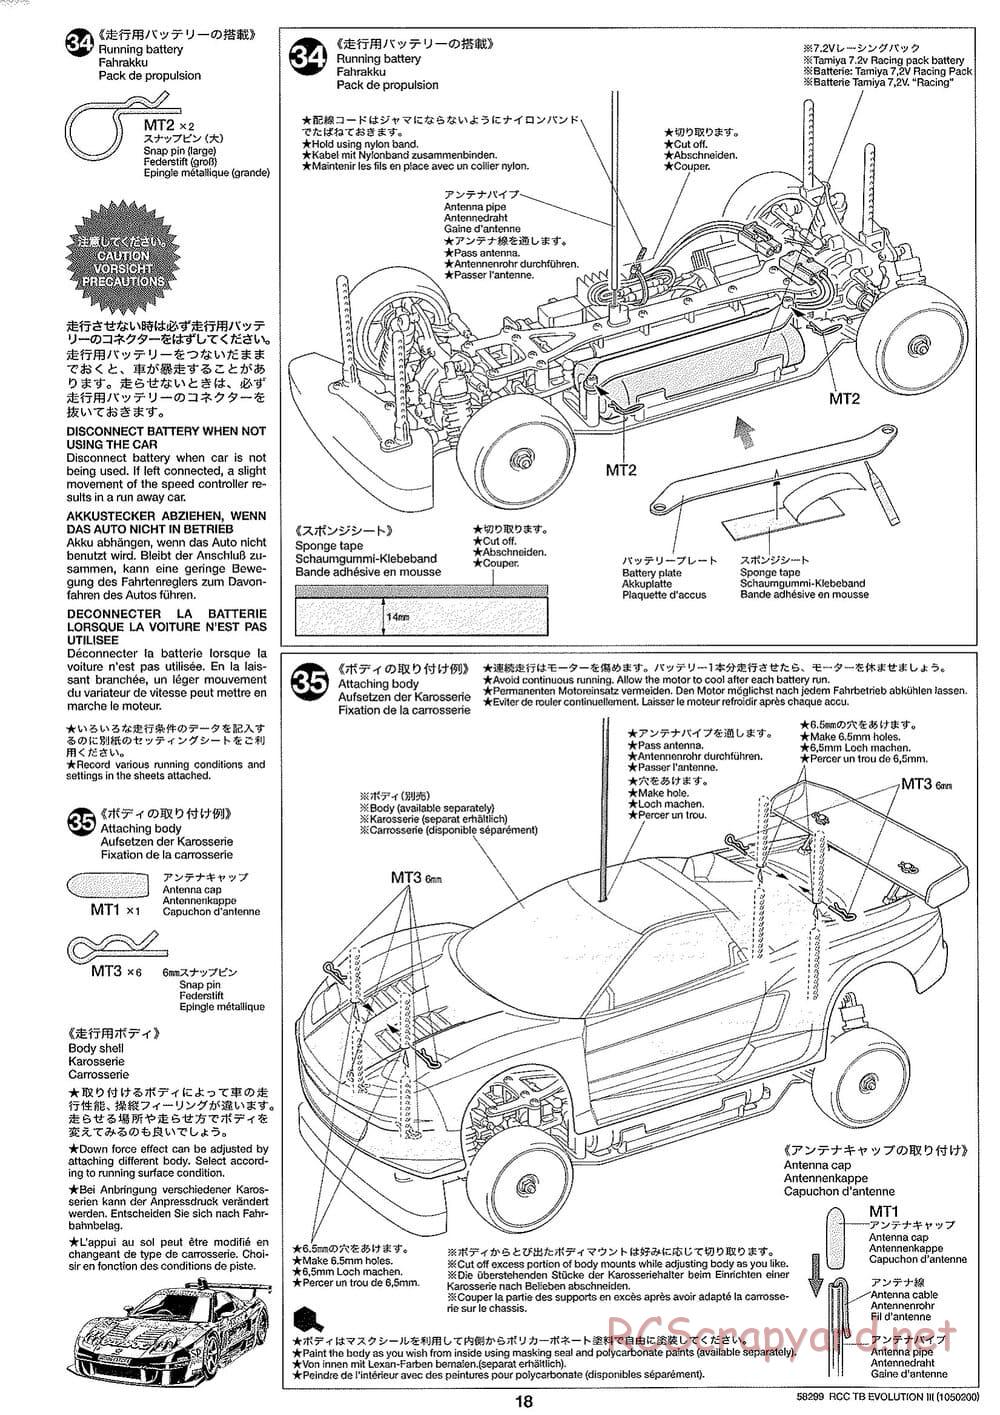 Tamiya - TB Evolution III Chassis - Manual - Page 19